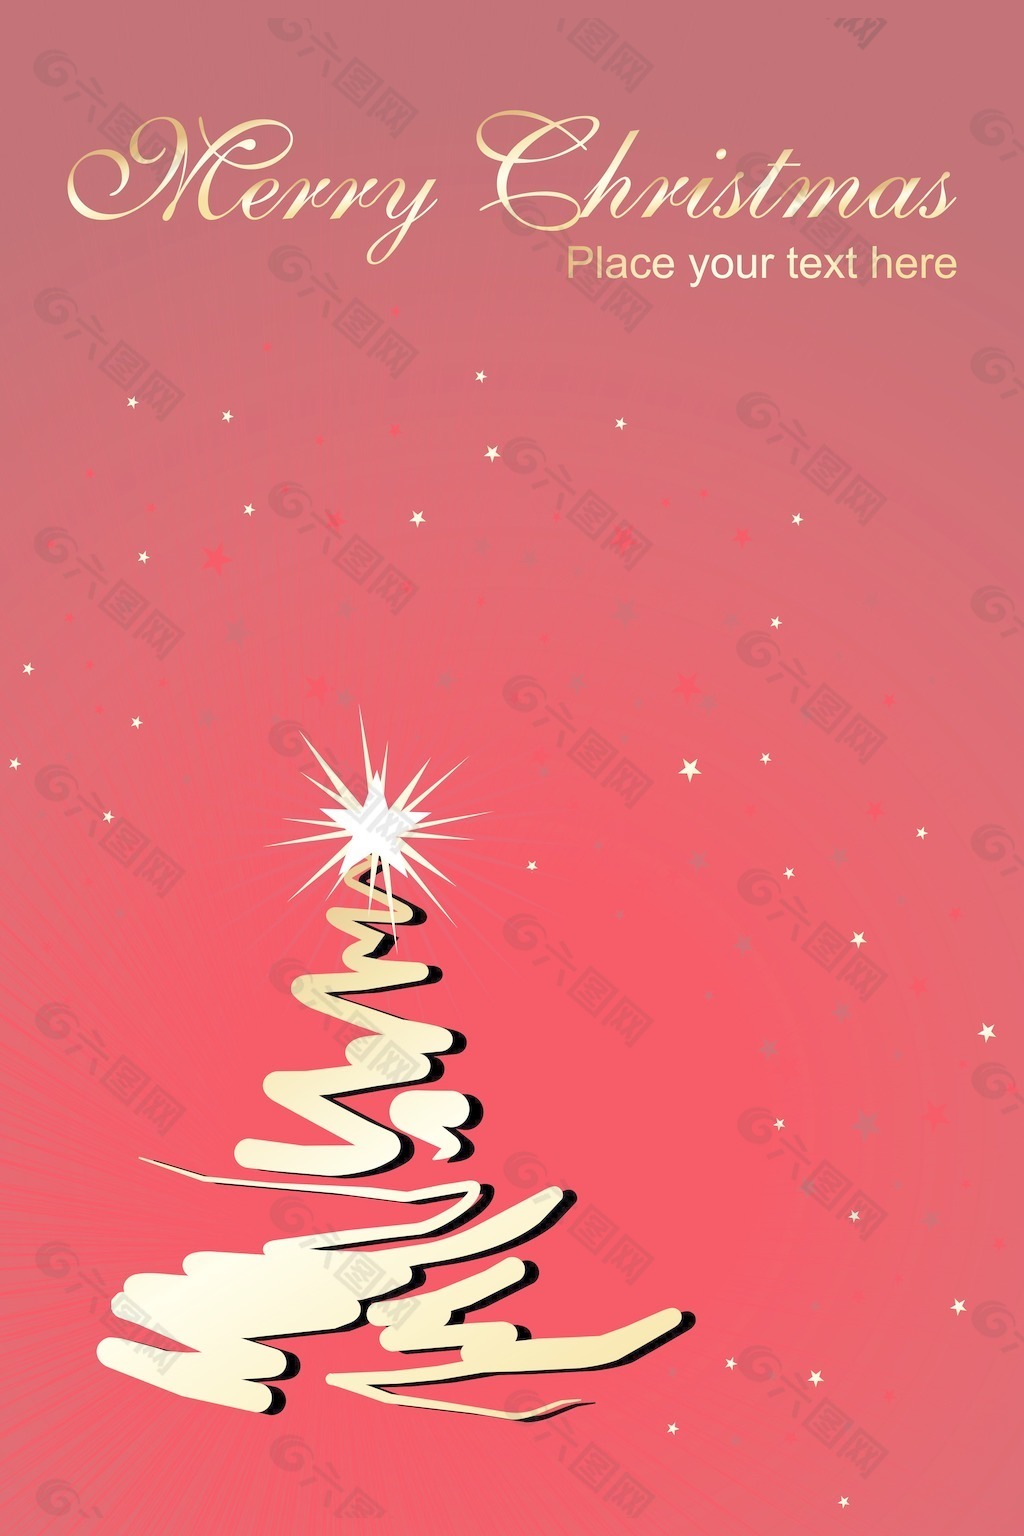 闪烁的圣诞树的星星背景